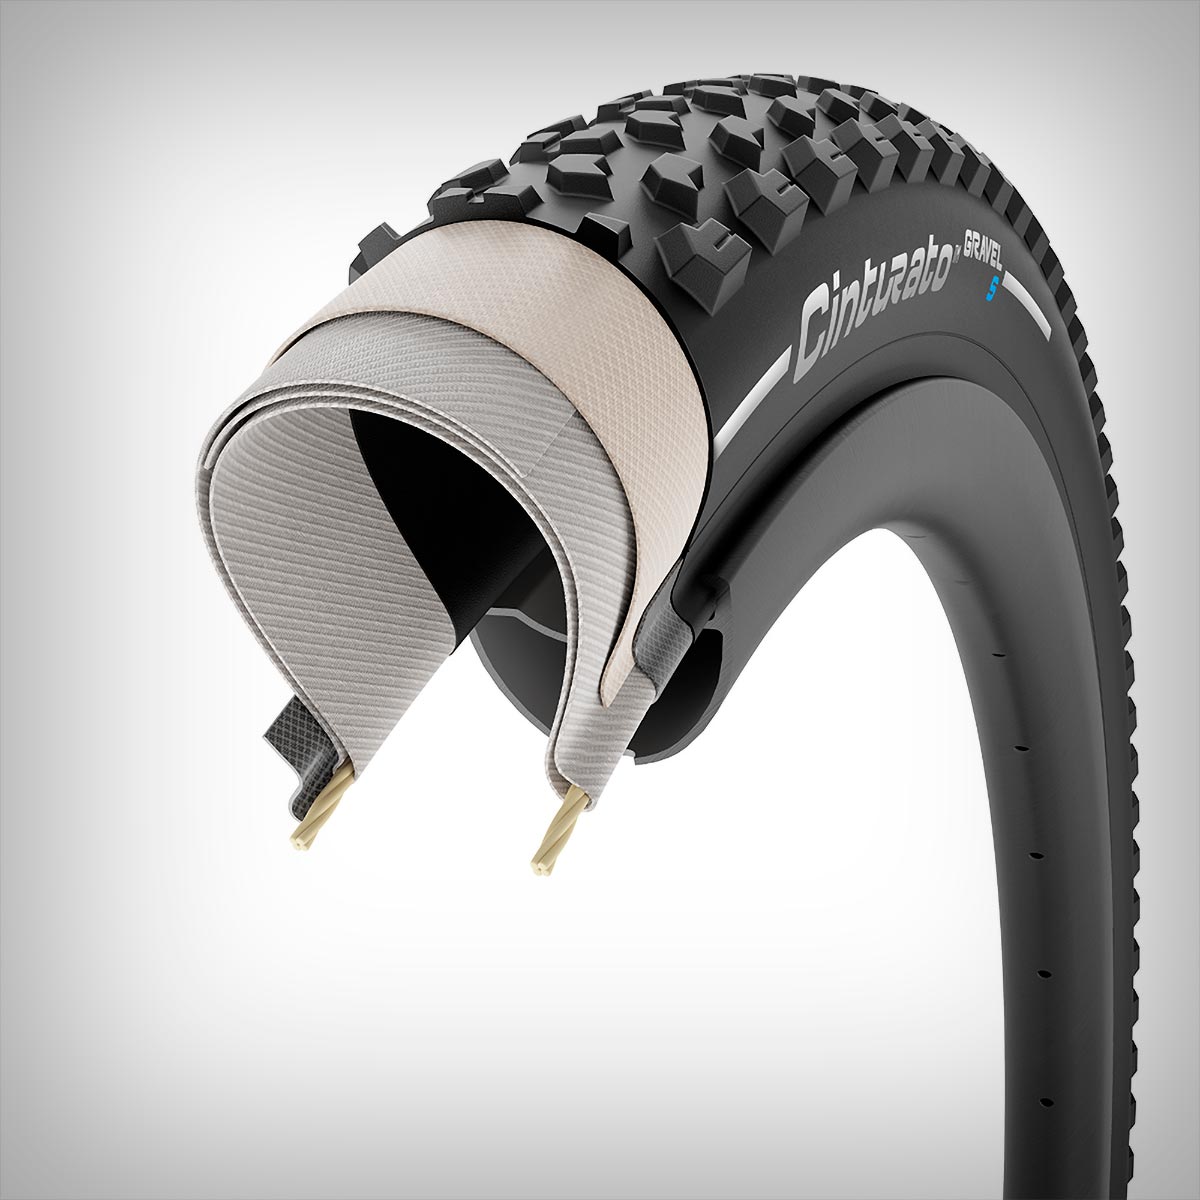 En TodoMountainBike: Pirelli presenta el Cinturato Gravel S, su neumático de gravel para los terrenos más difíciles